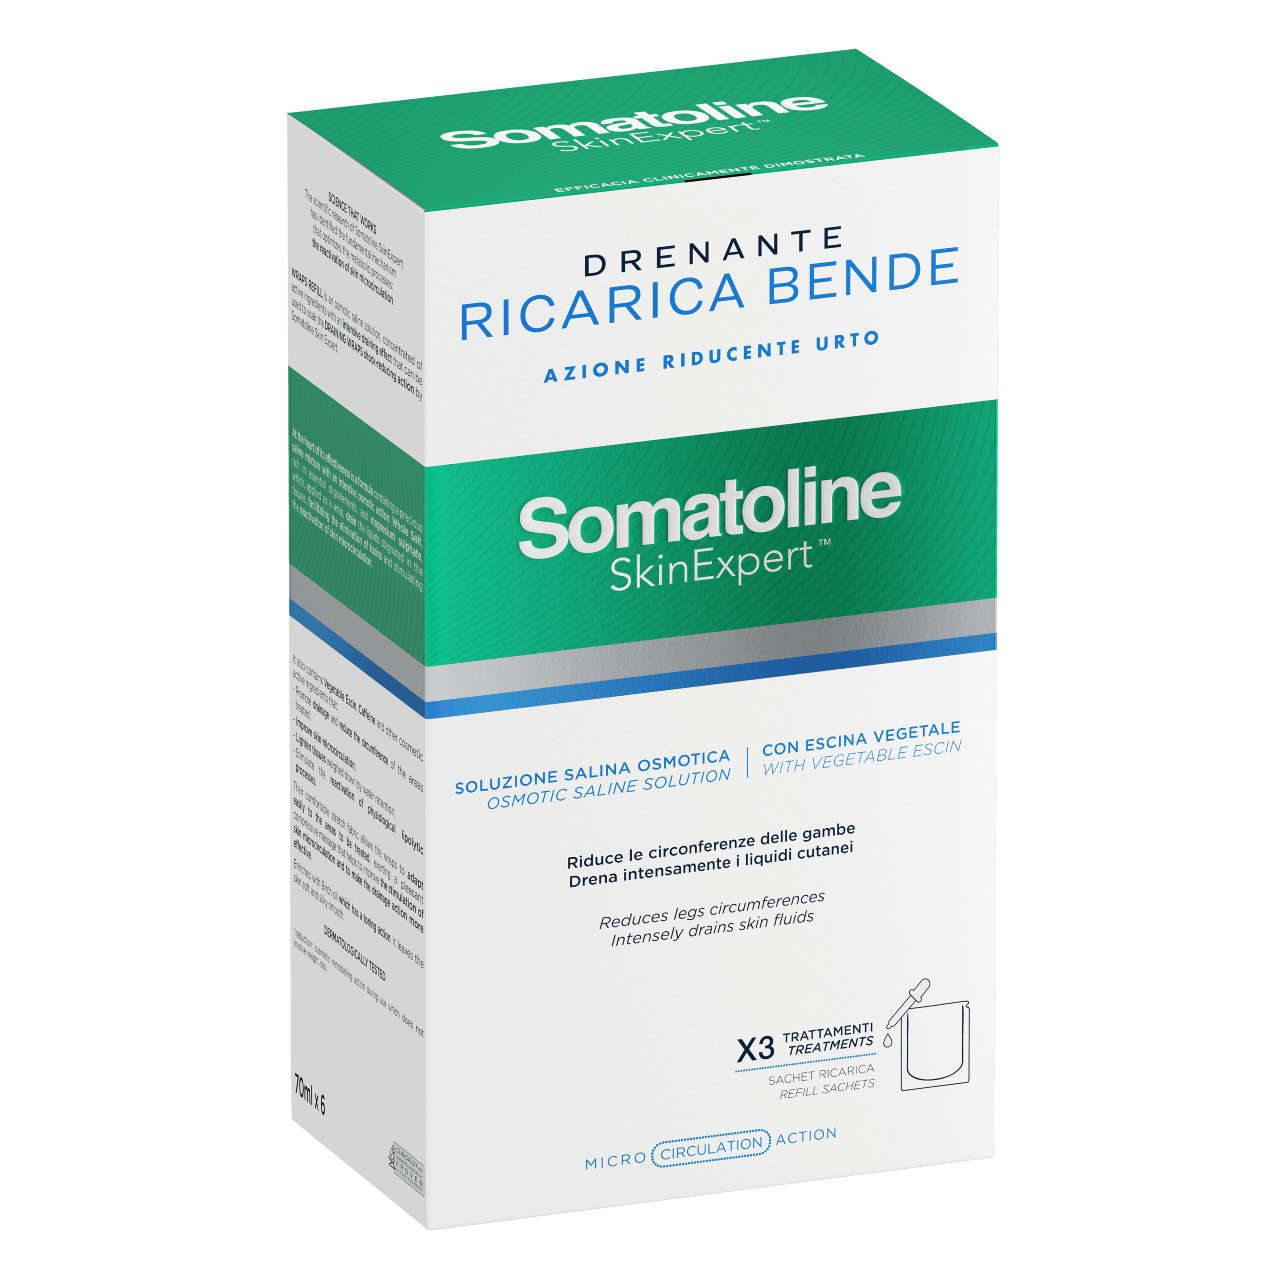 Somatoline - SkinExpert - Ricarica Bende